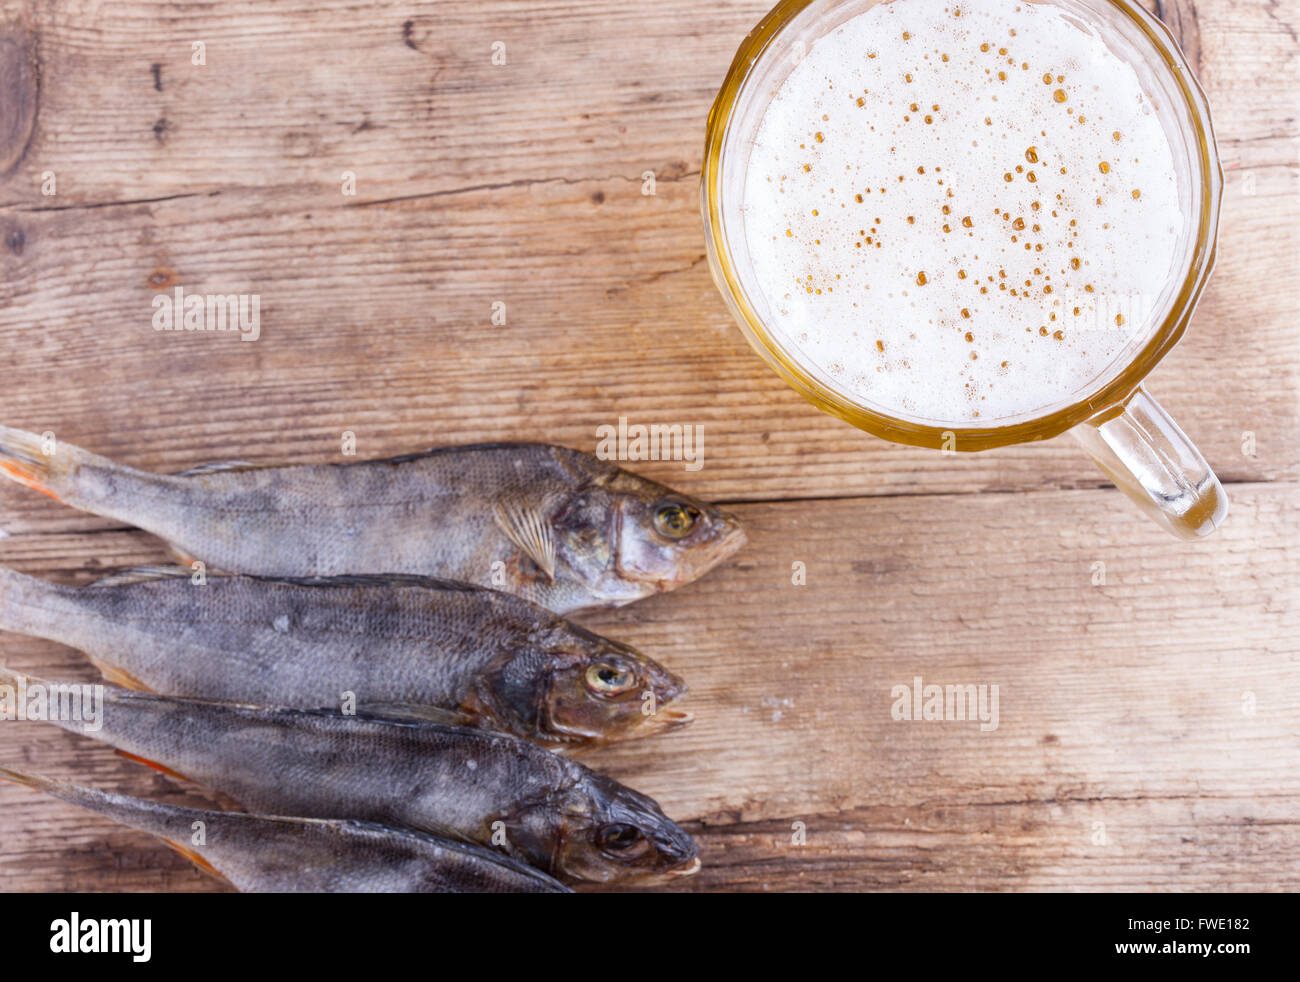 La cerveza y el pescado en el fondo de la vista de la mesa Foto de stock